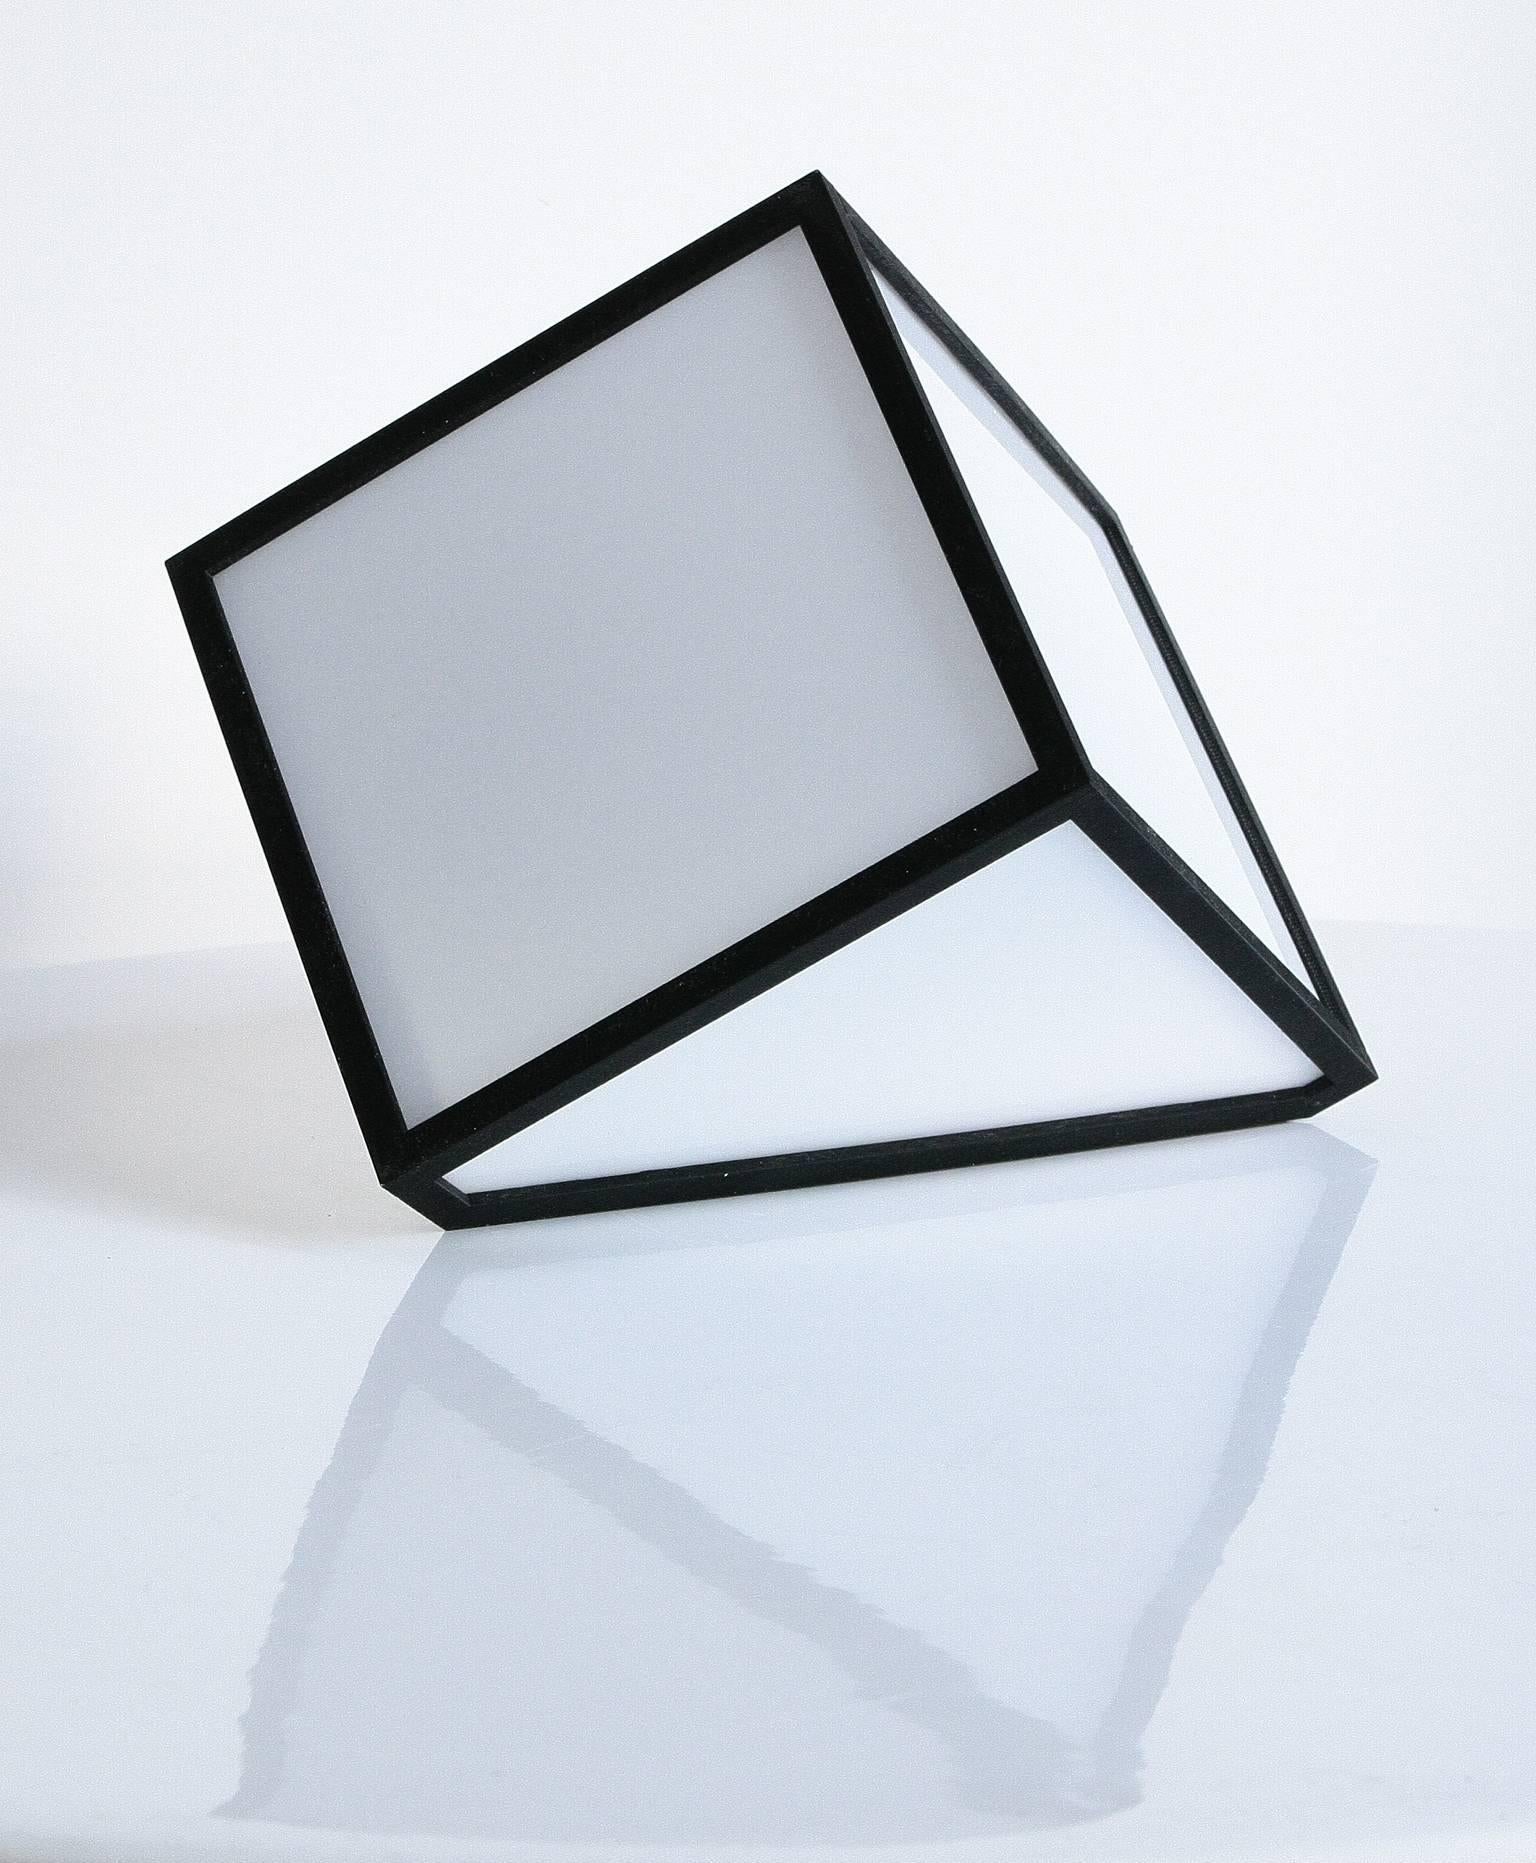 Fabiano Speziari Contemporary Minimalist 7face Cube Italian Table Lamp, 2017 For Sale 2